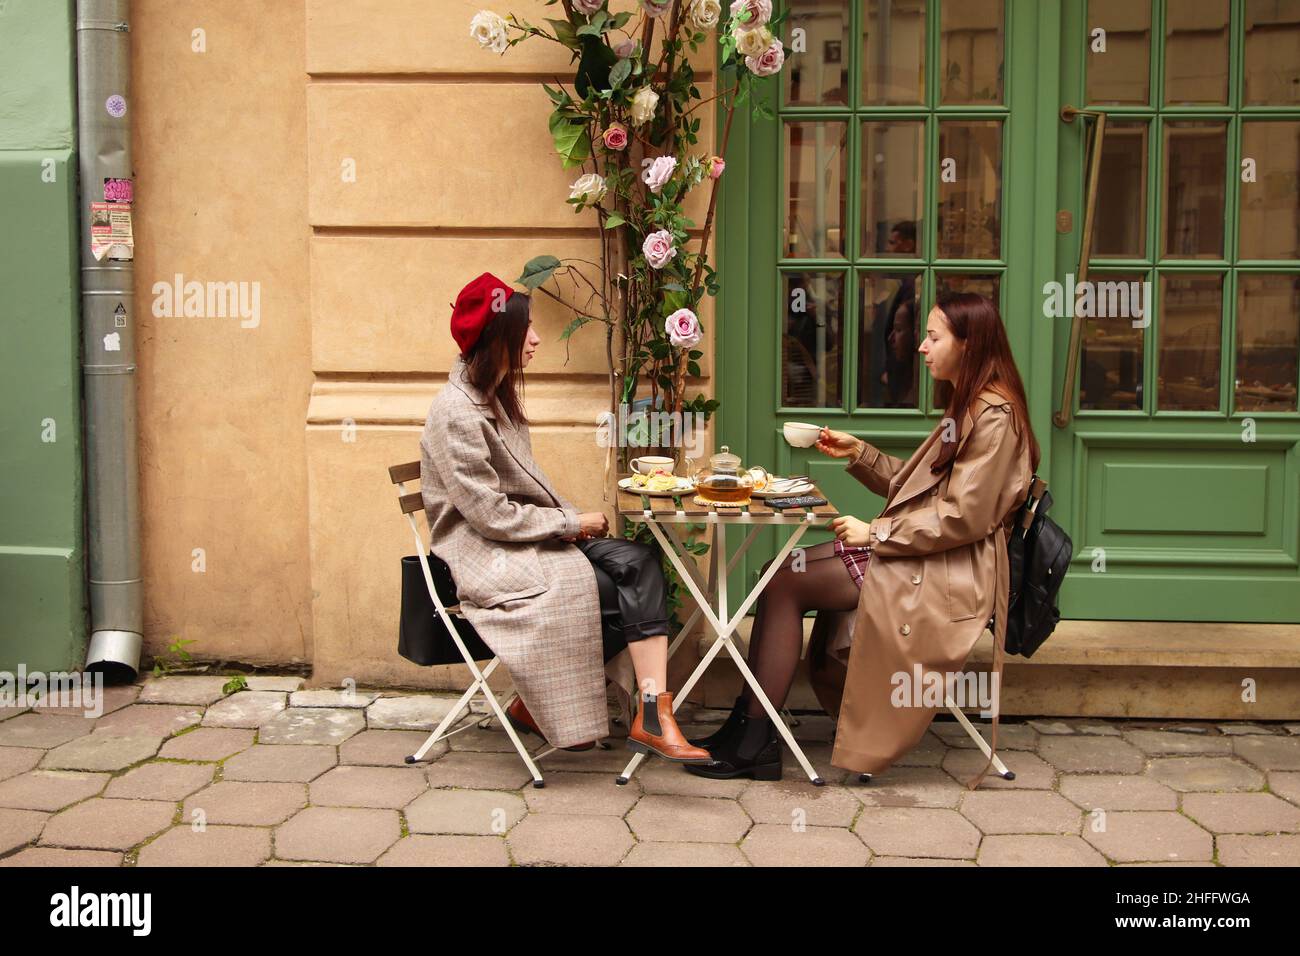 Lviv, Ukraine - 26.09.2021: Deux jeunes femmes boivent du thé ou du café à l'extérieur dans le contexte de la vieille ville.Personnes, communication et amitié concept: Femmes Banque D'Images